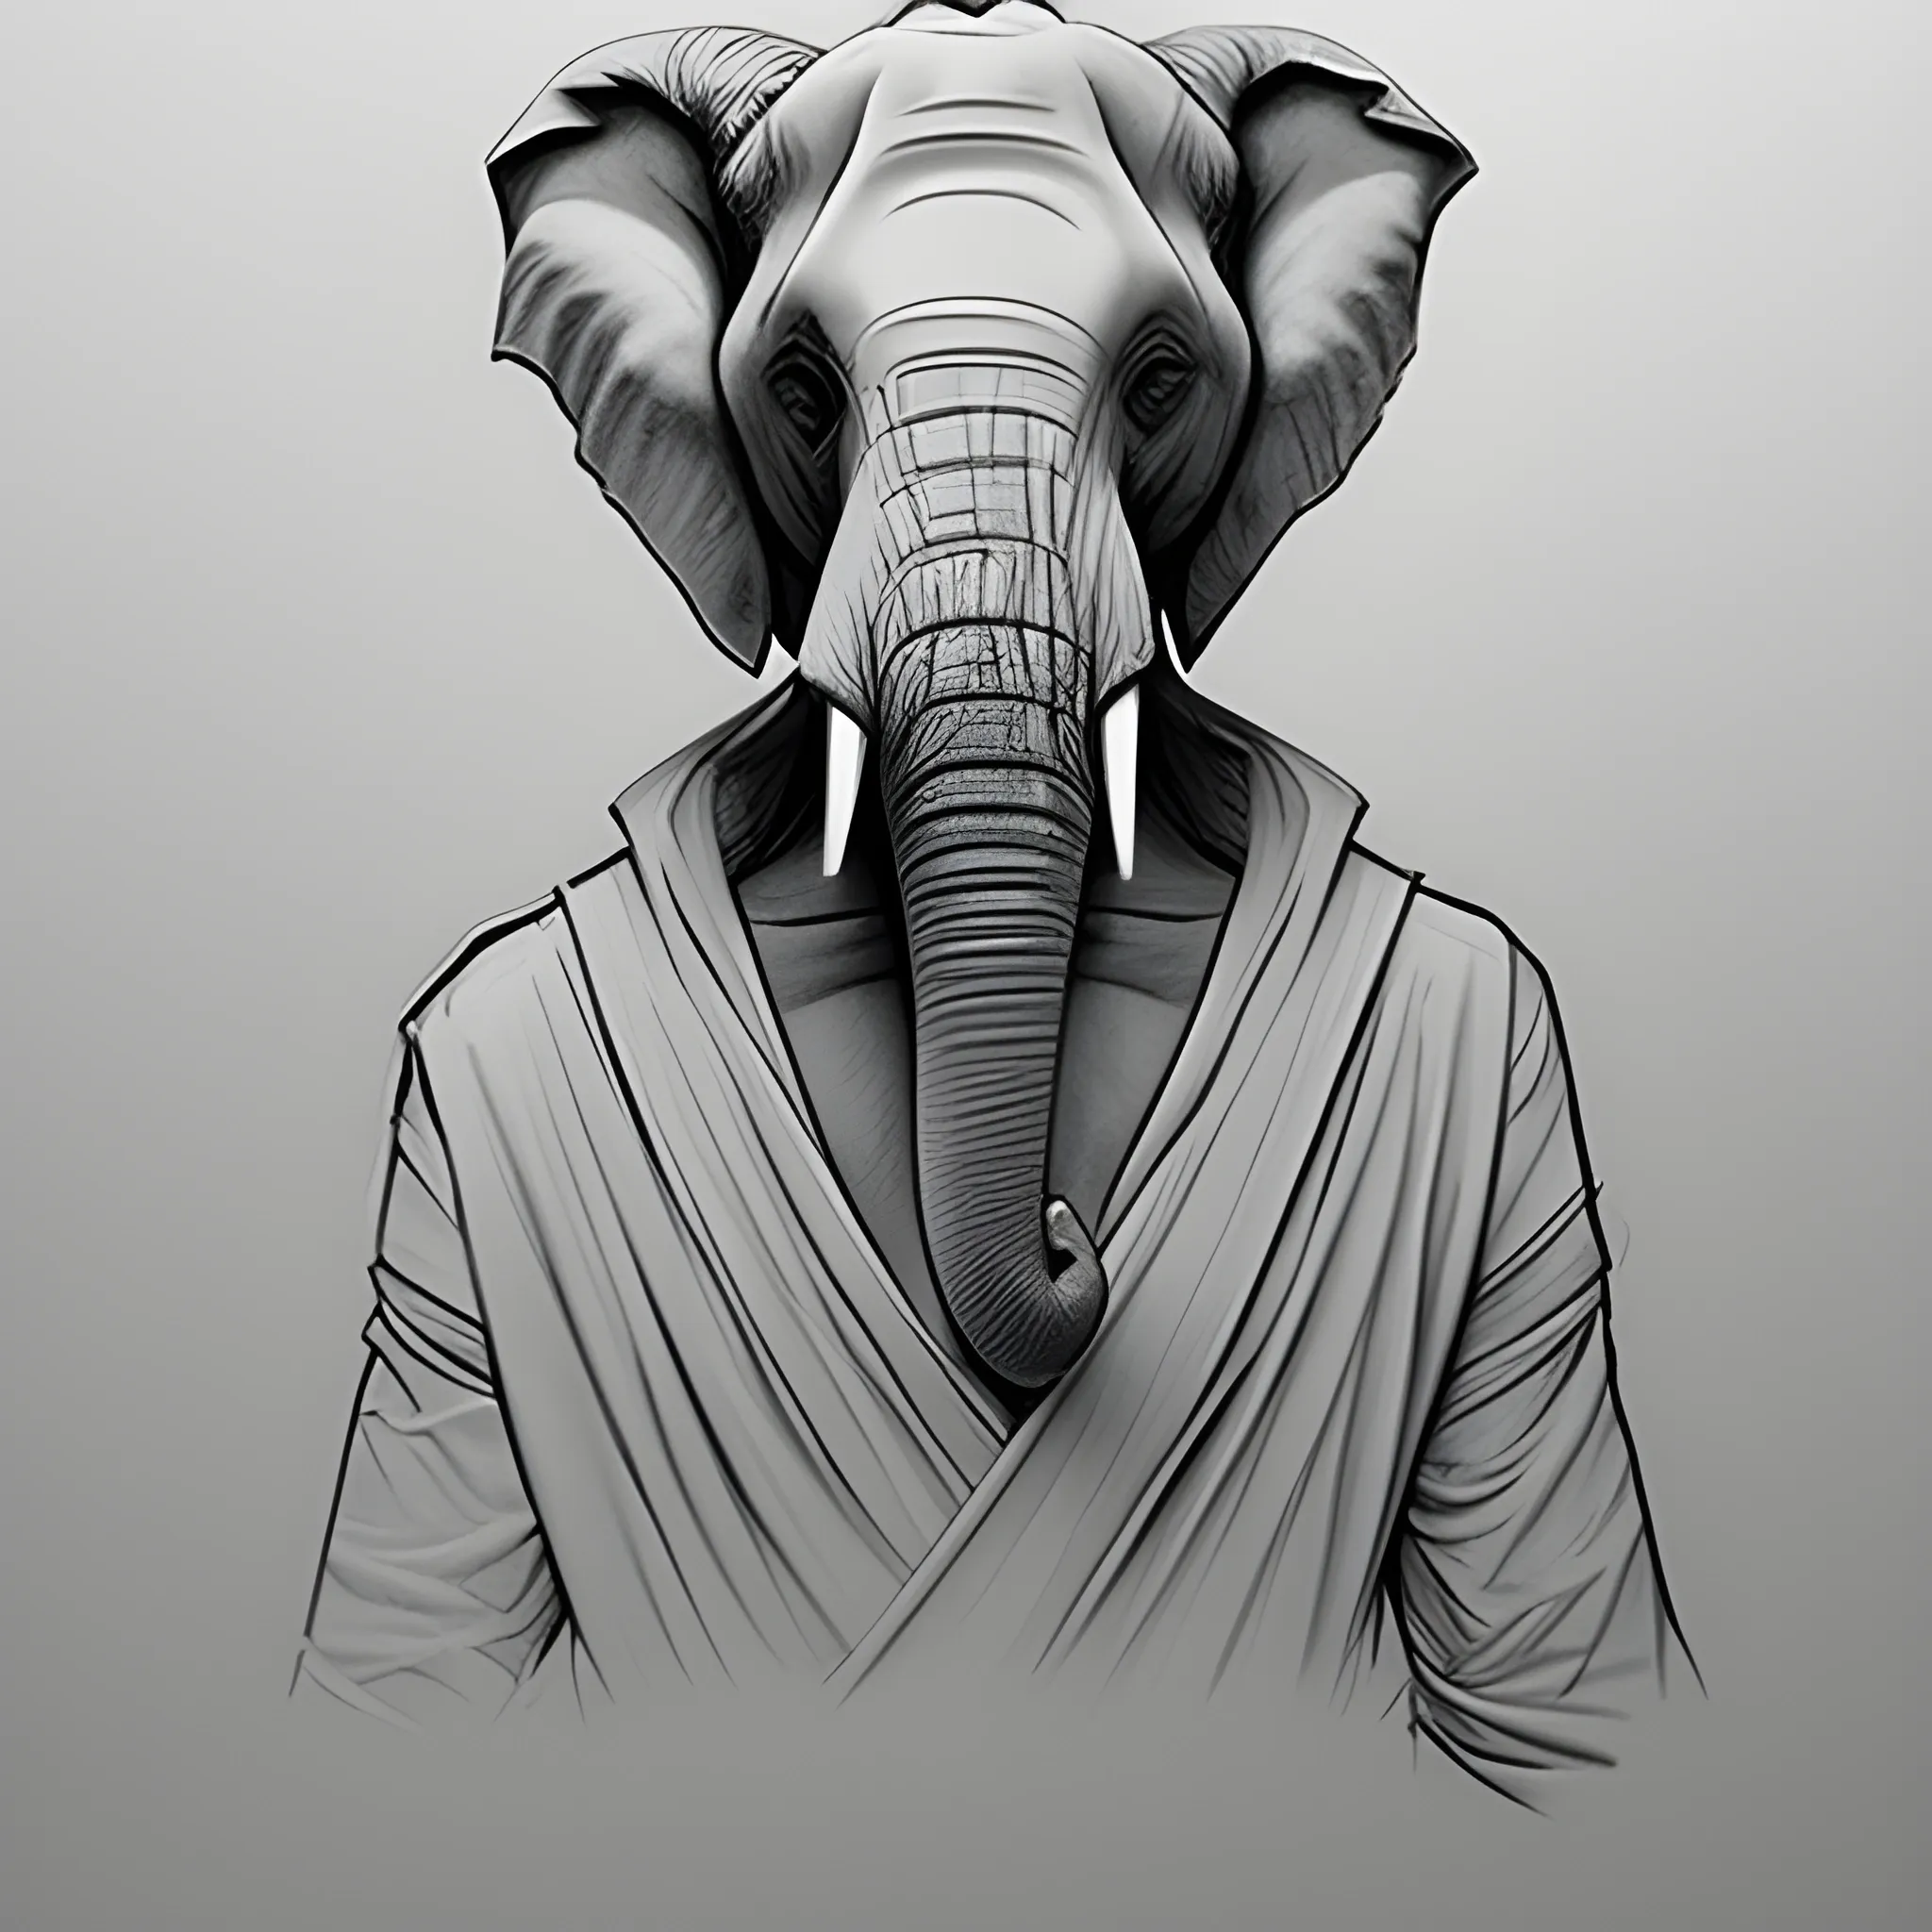 dynamic pose, half body portrait, elephant jedi man, sneaky, longer trunk, Pencil Sketch